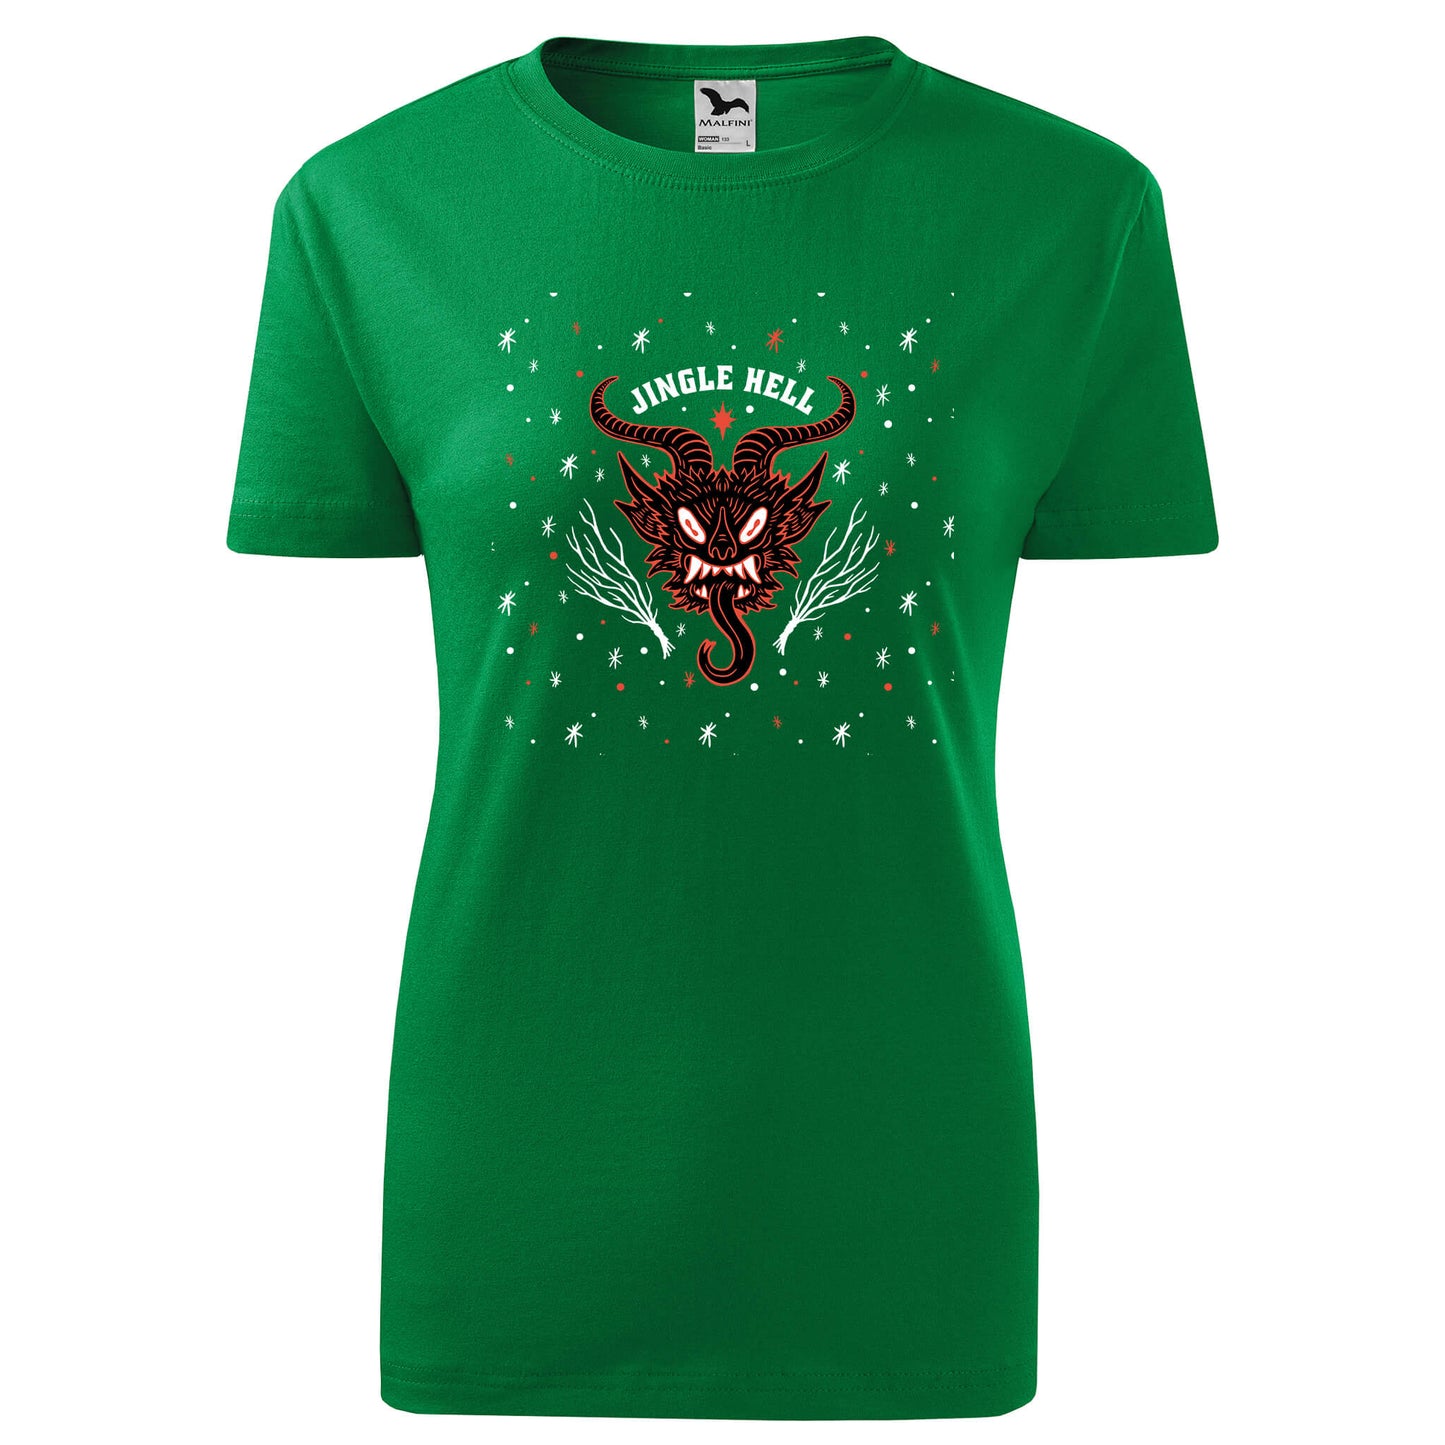 Jingle hell christmas t-shirt - rvdesignprint